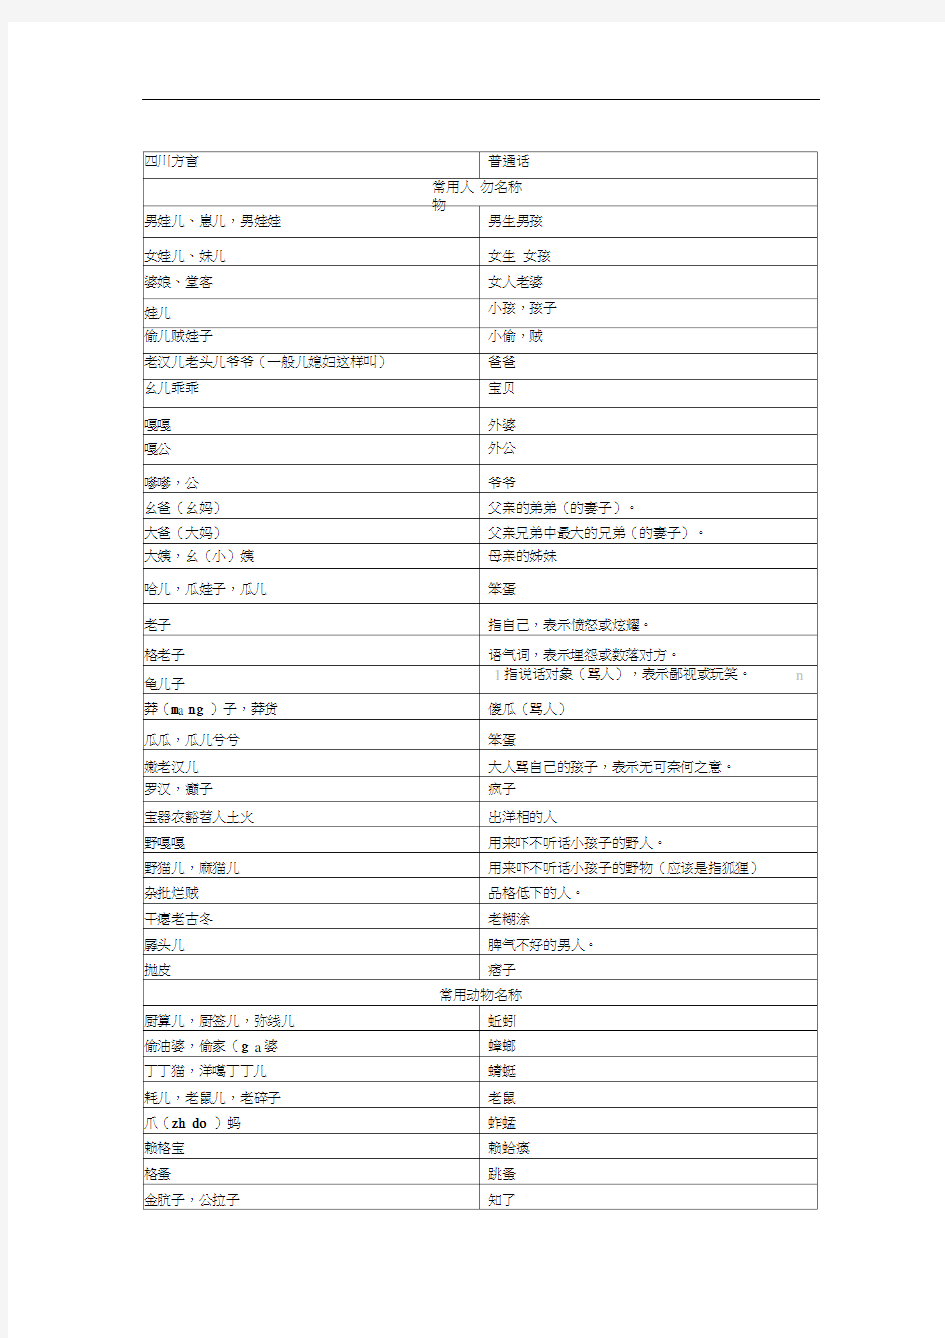 四川方言普通话发音对照表